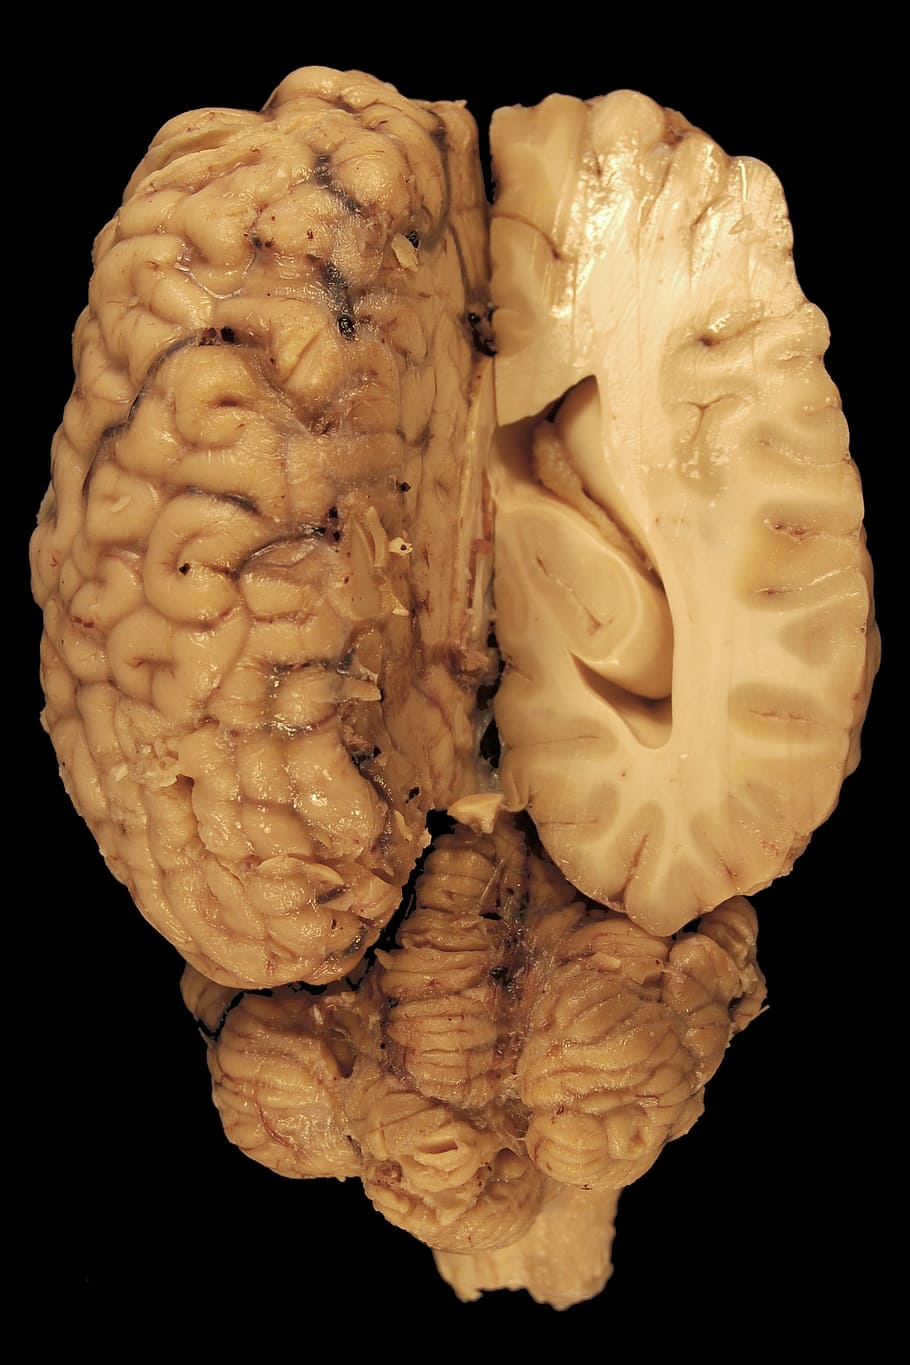 ilustrasi otak, otak, anatomi, mata, paerparat, kuda, biologi, punggung, tubuh, kedokteran hewan